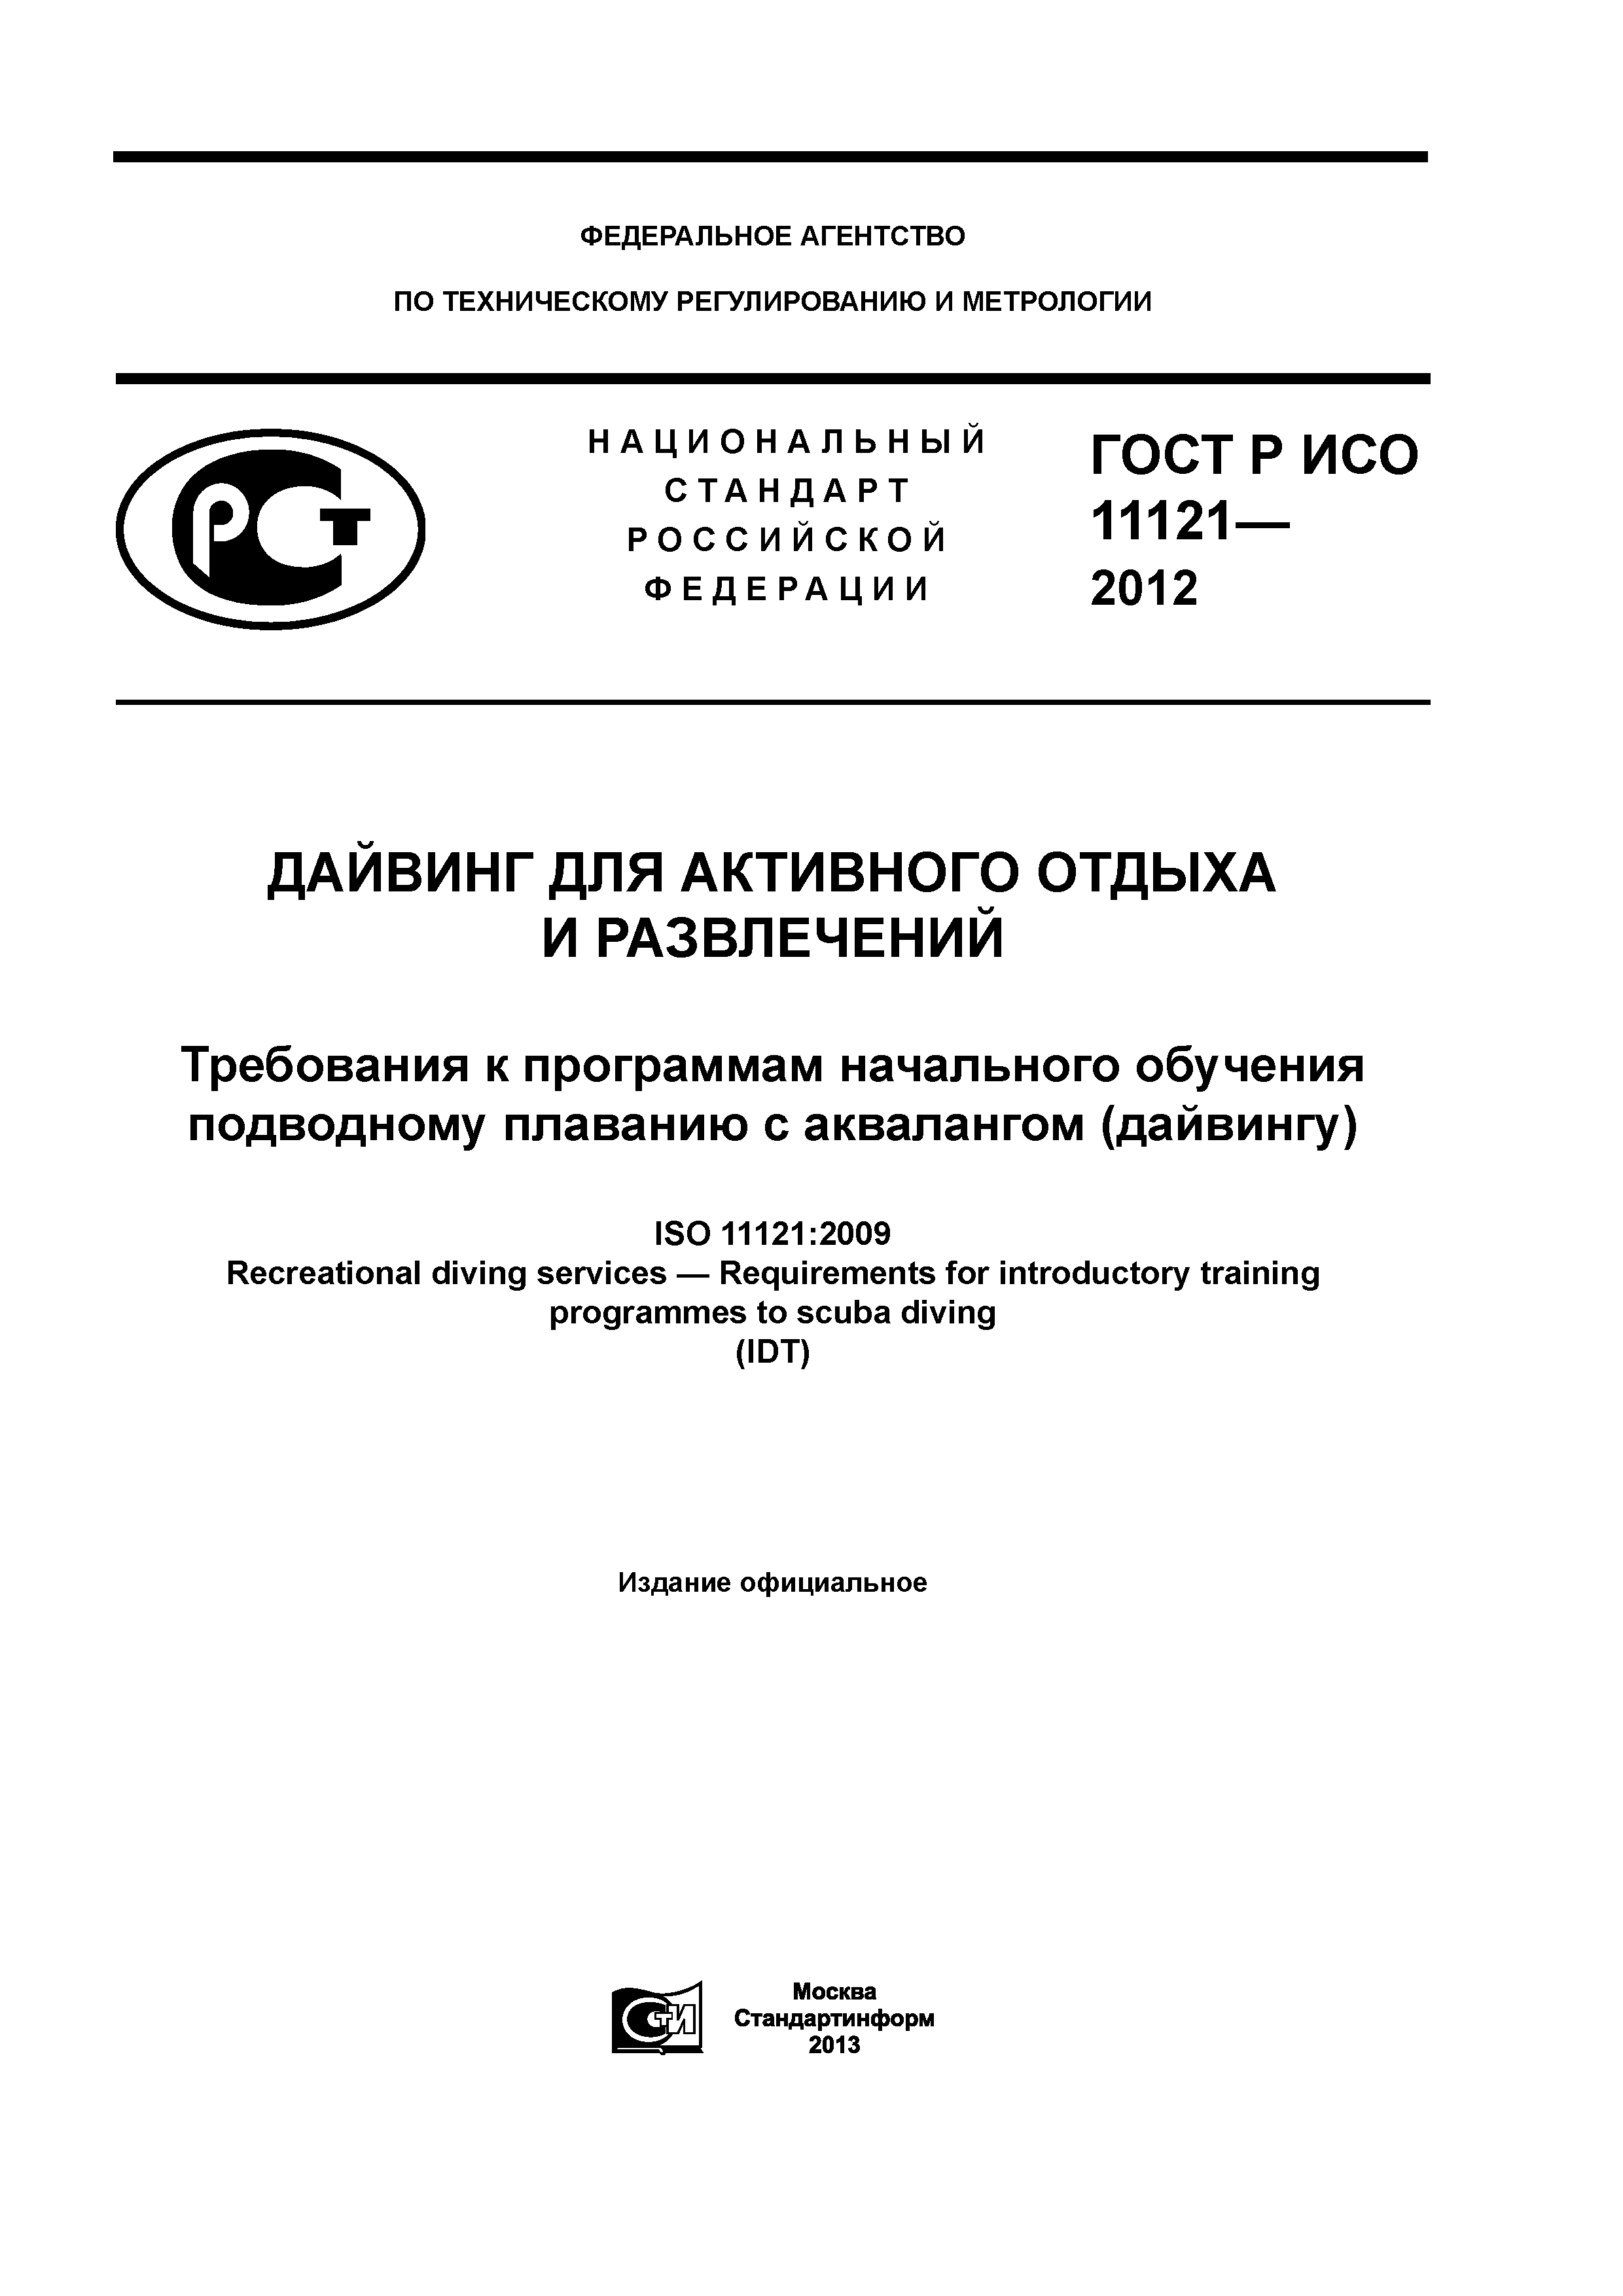 ГОСТ Р ИСО 11121-2012